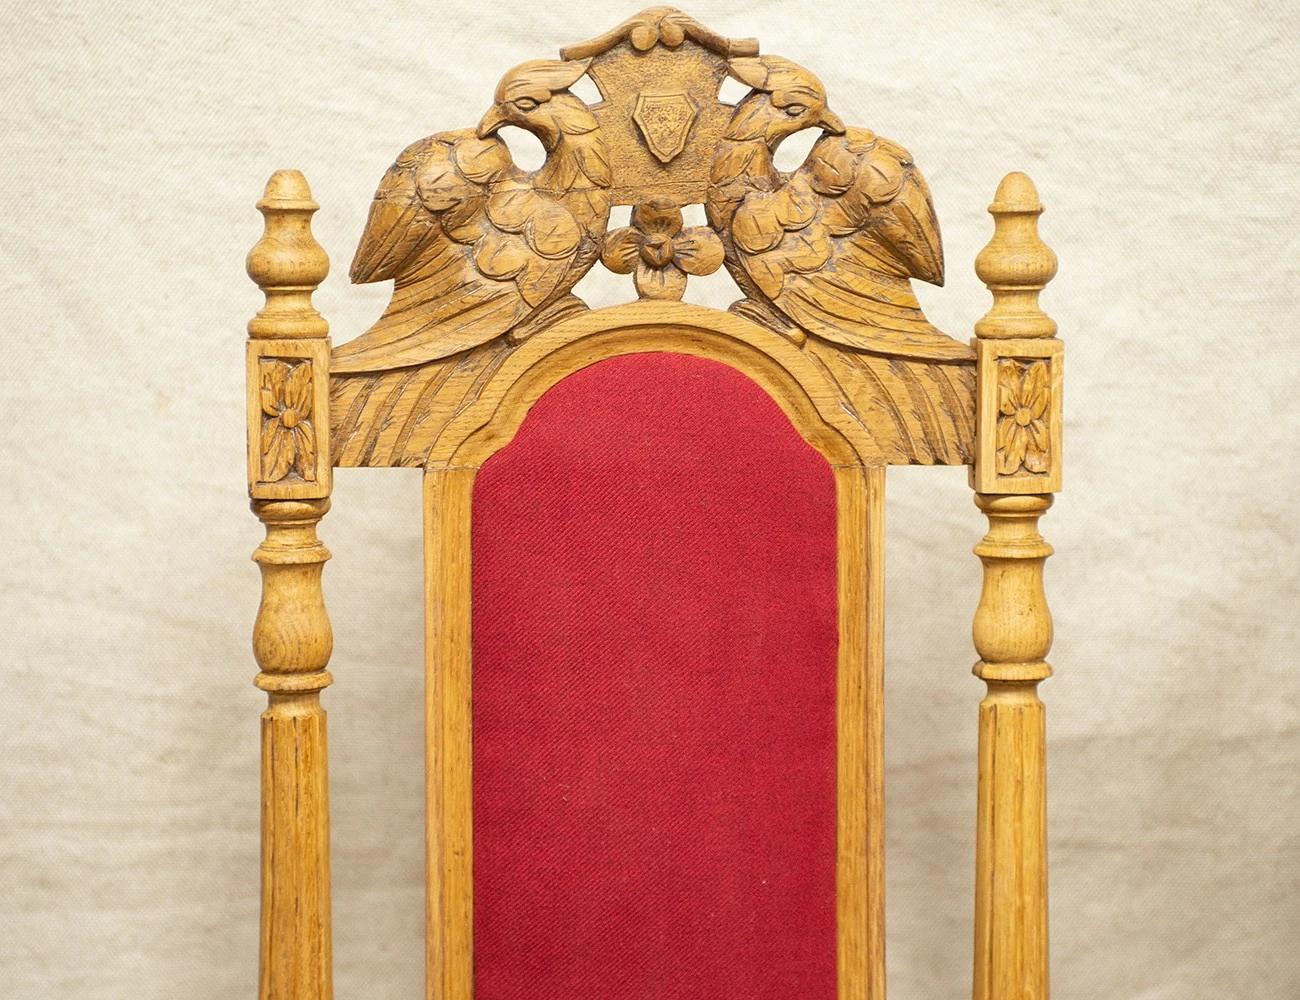 Реставрация пары дубовых стульев 19 века